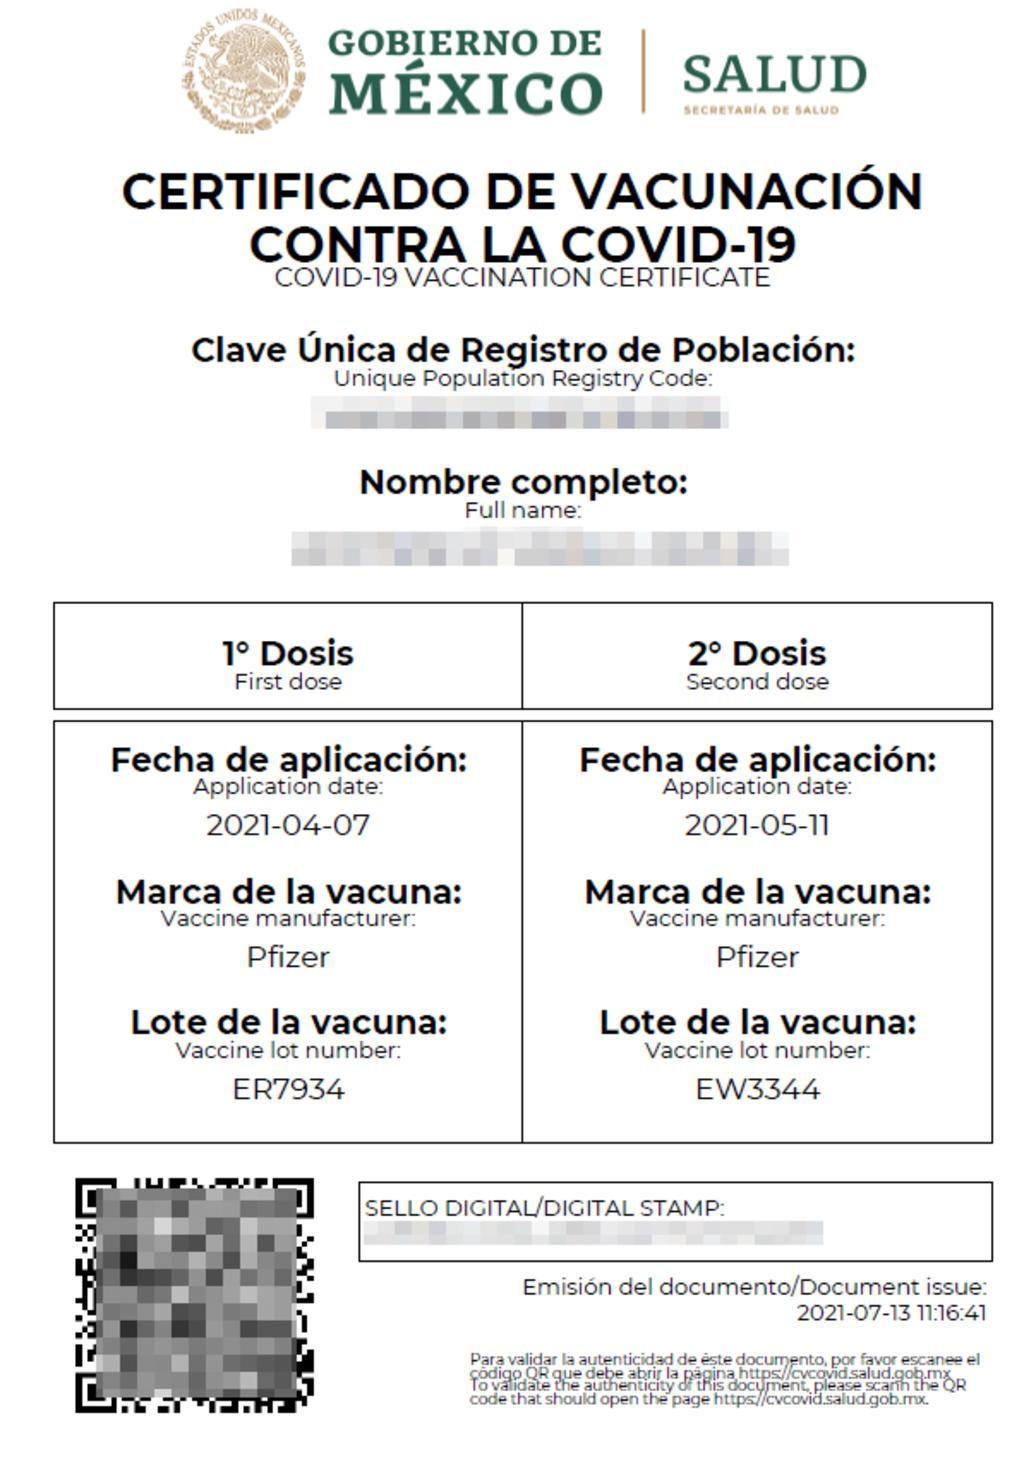 ¿Cómo descargar el certificado de vacunación contra el COVID19?